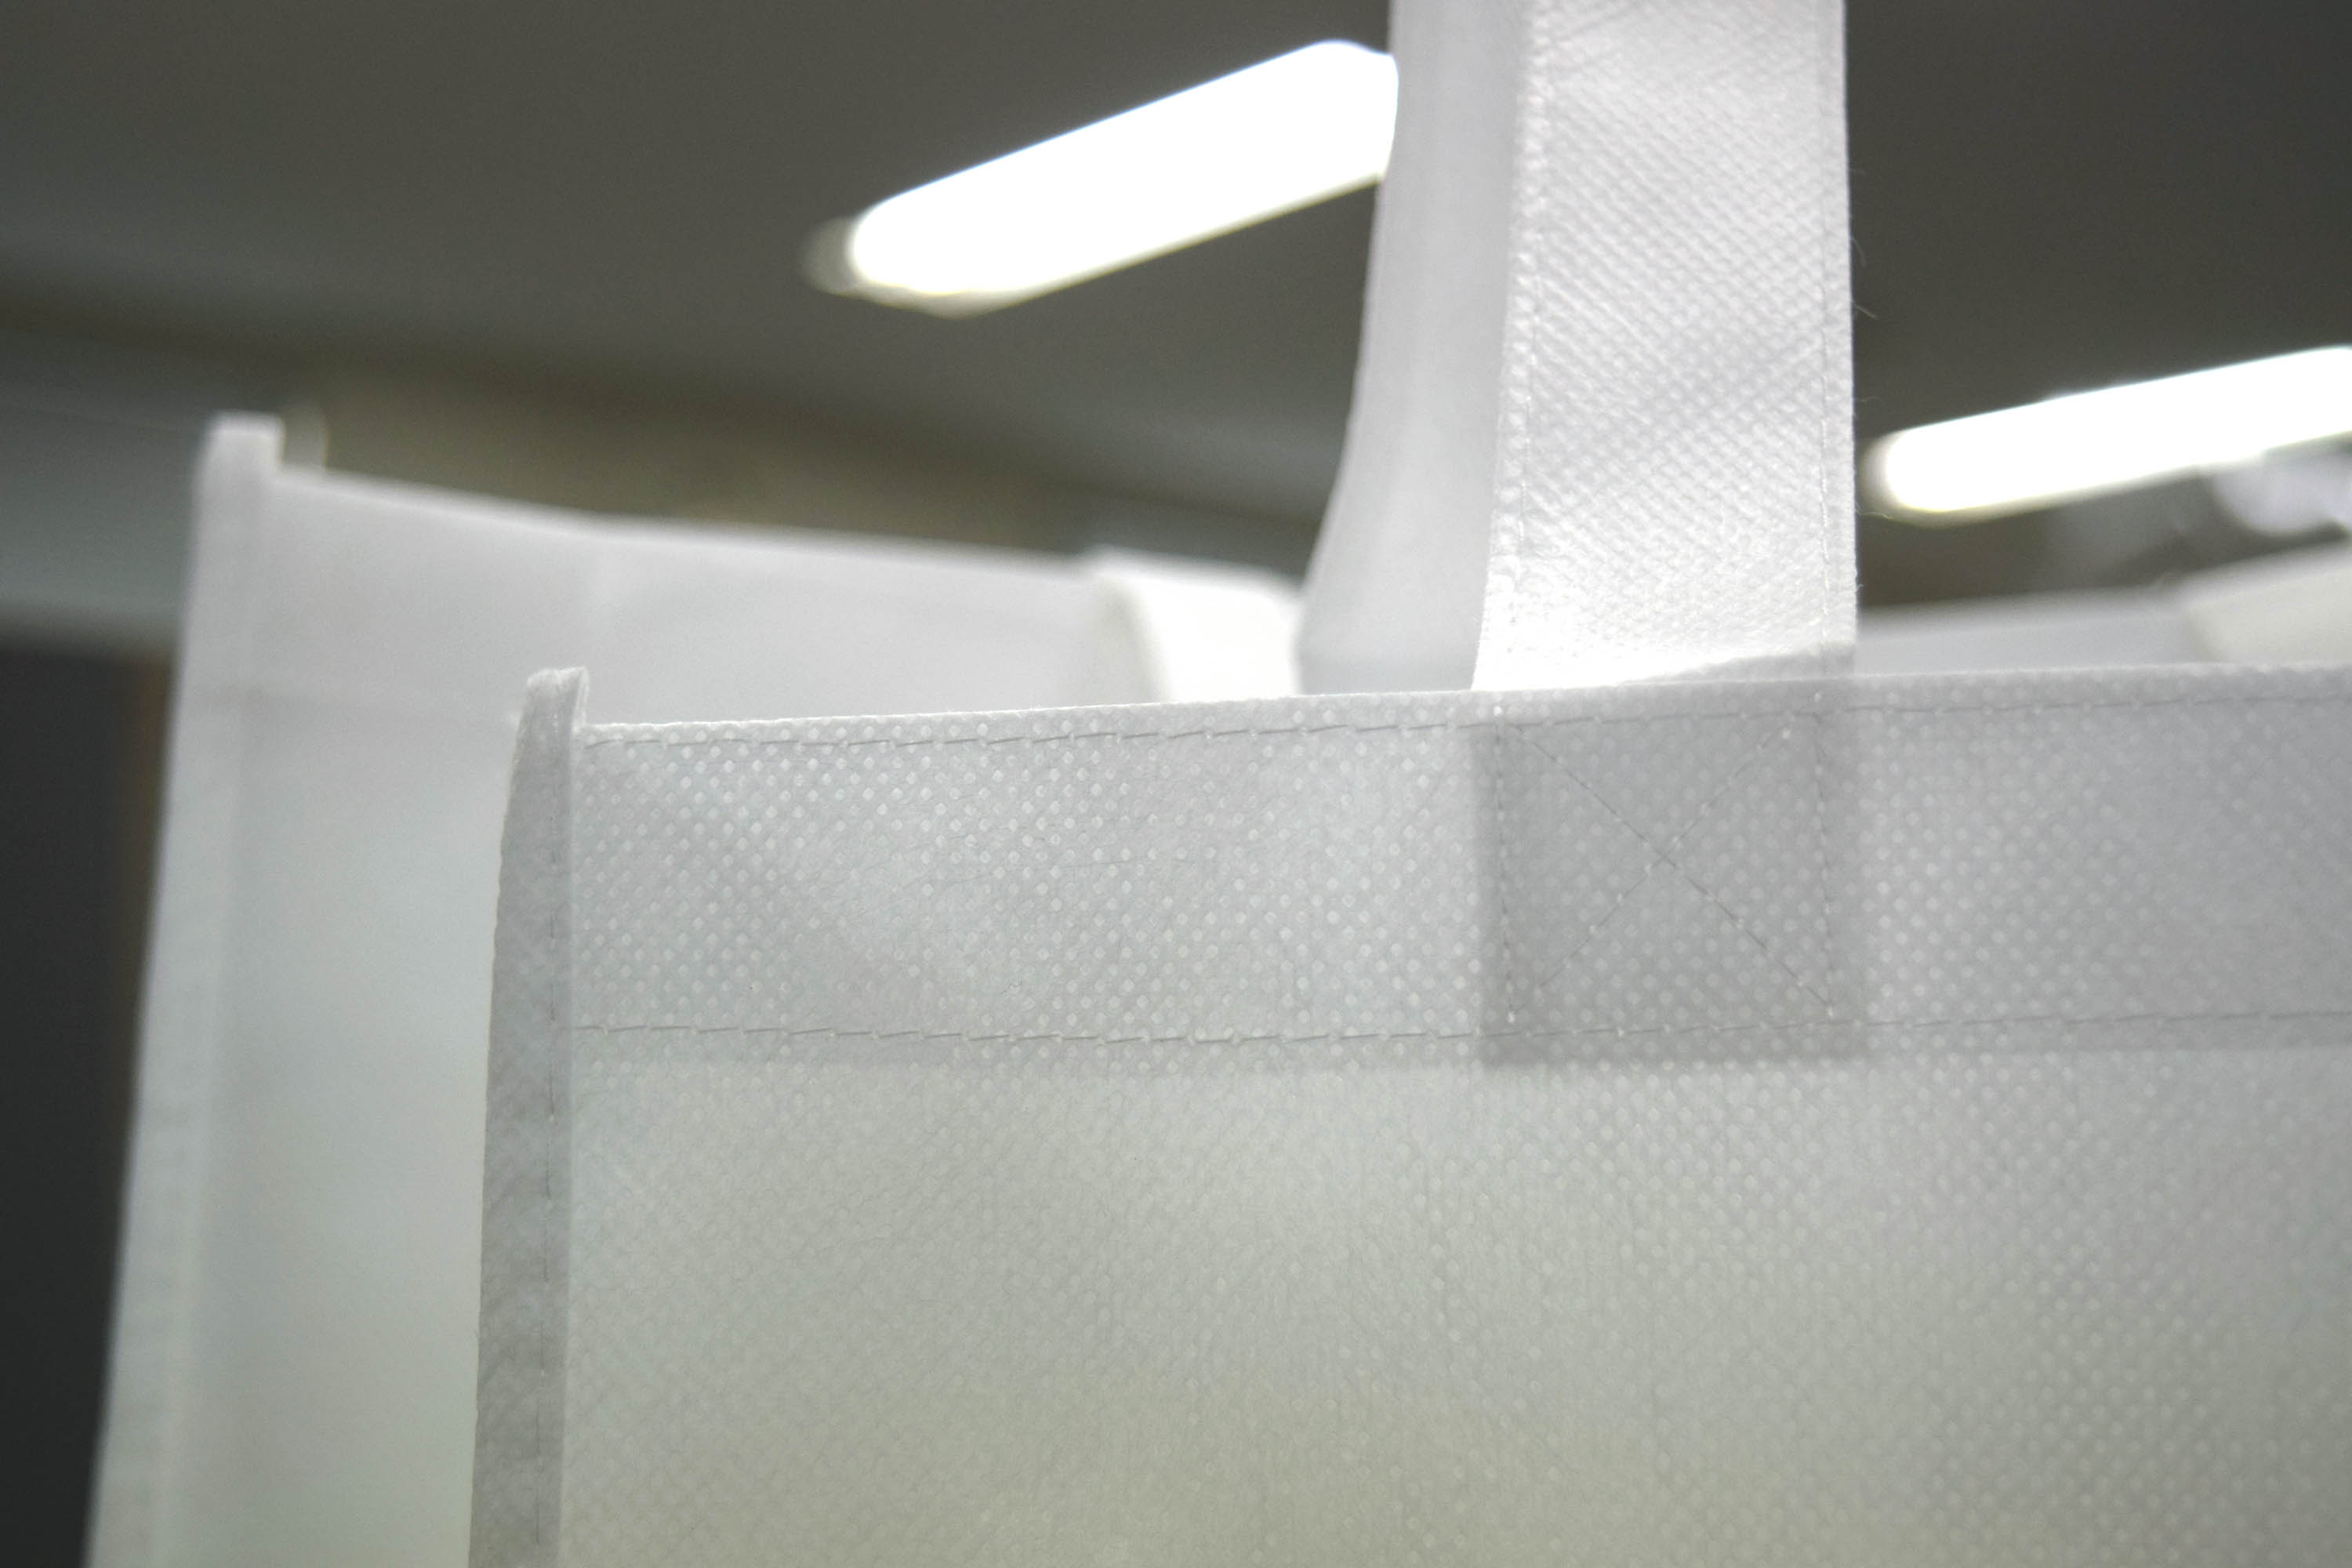 地球環境に配慮した素材、「バイオマス不織布」を使った、手提げバッグの既製品２サイズ。